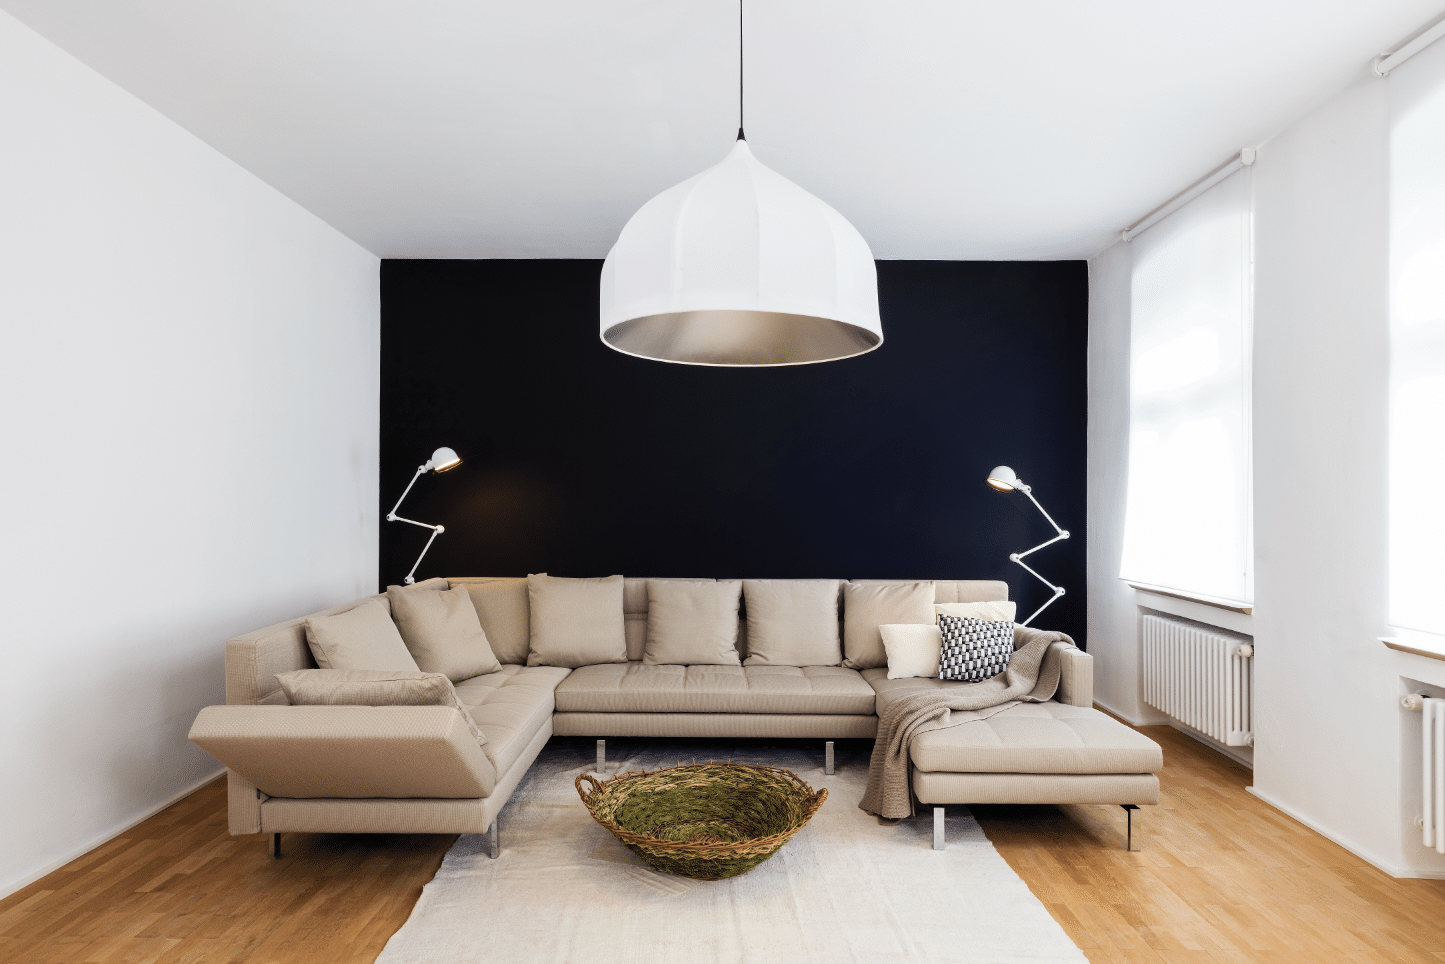 Wohnzimmer mit eleganter Wohnlandschaft in beige von Brühl erhältlich im Wohnhaus Grill & Ronacher.